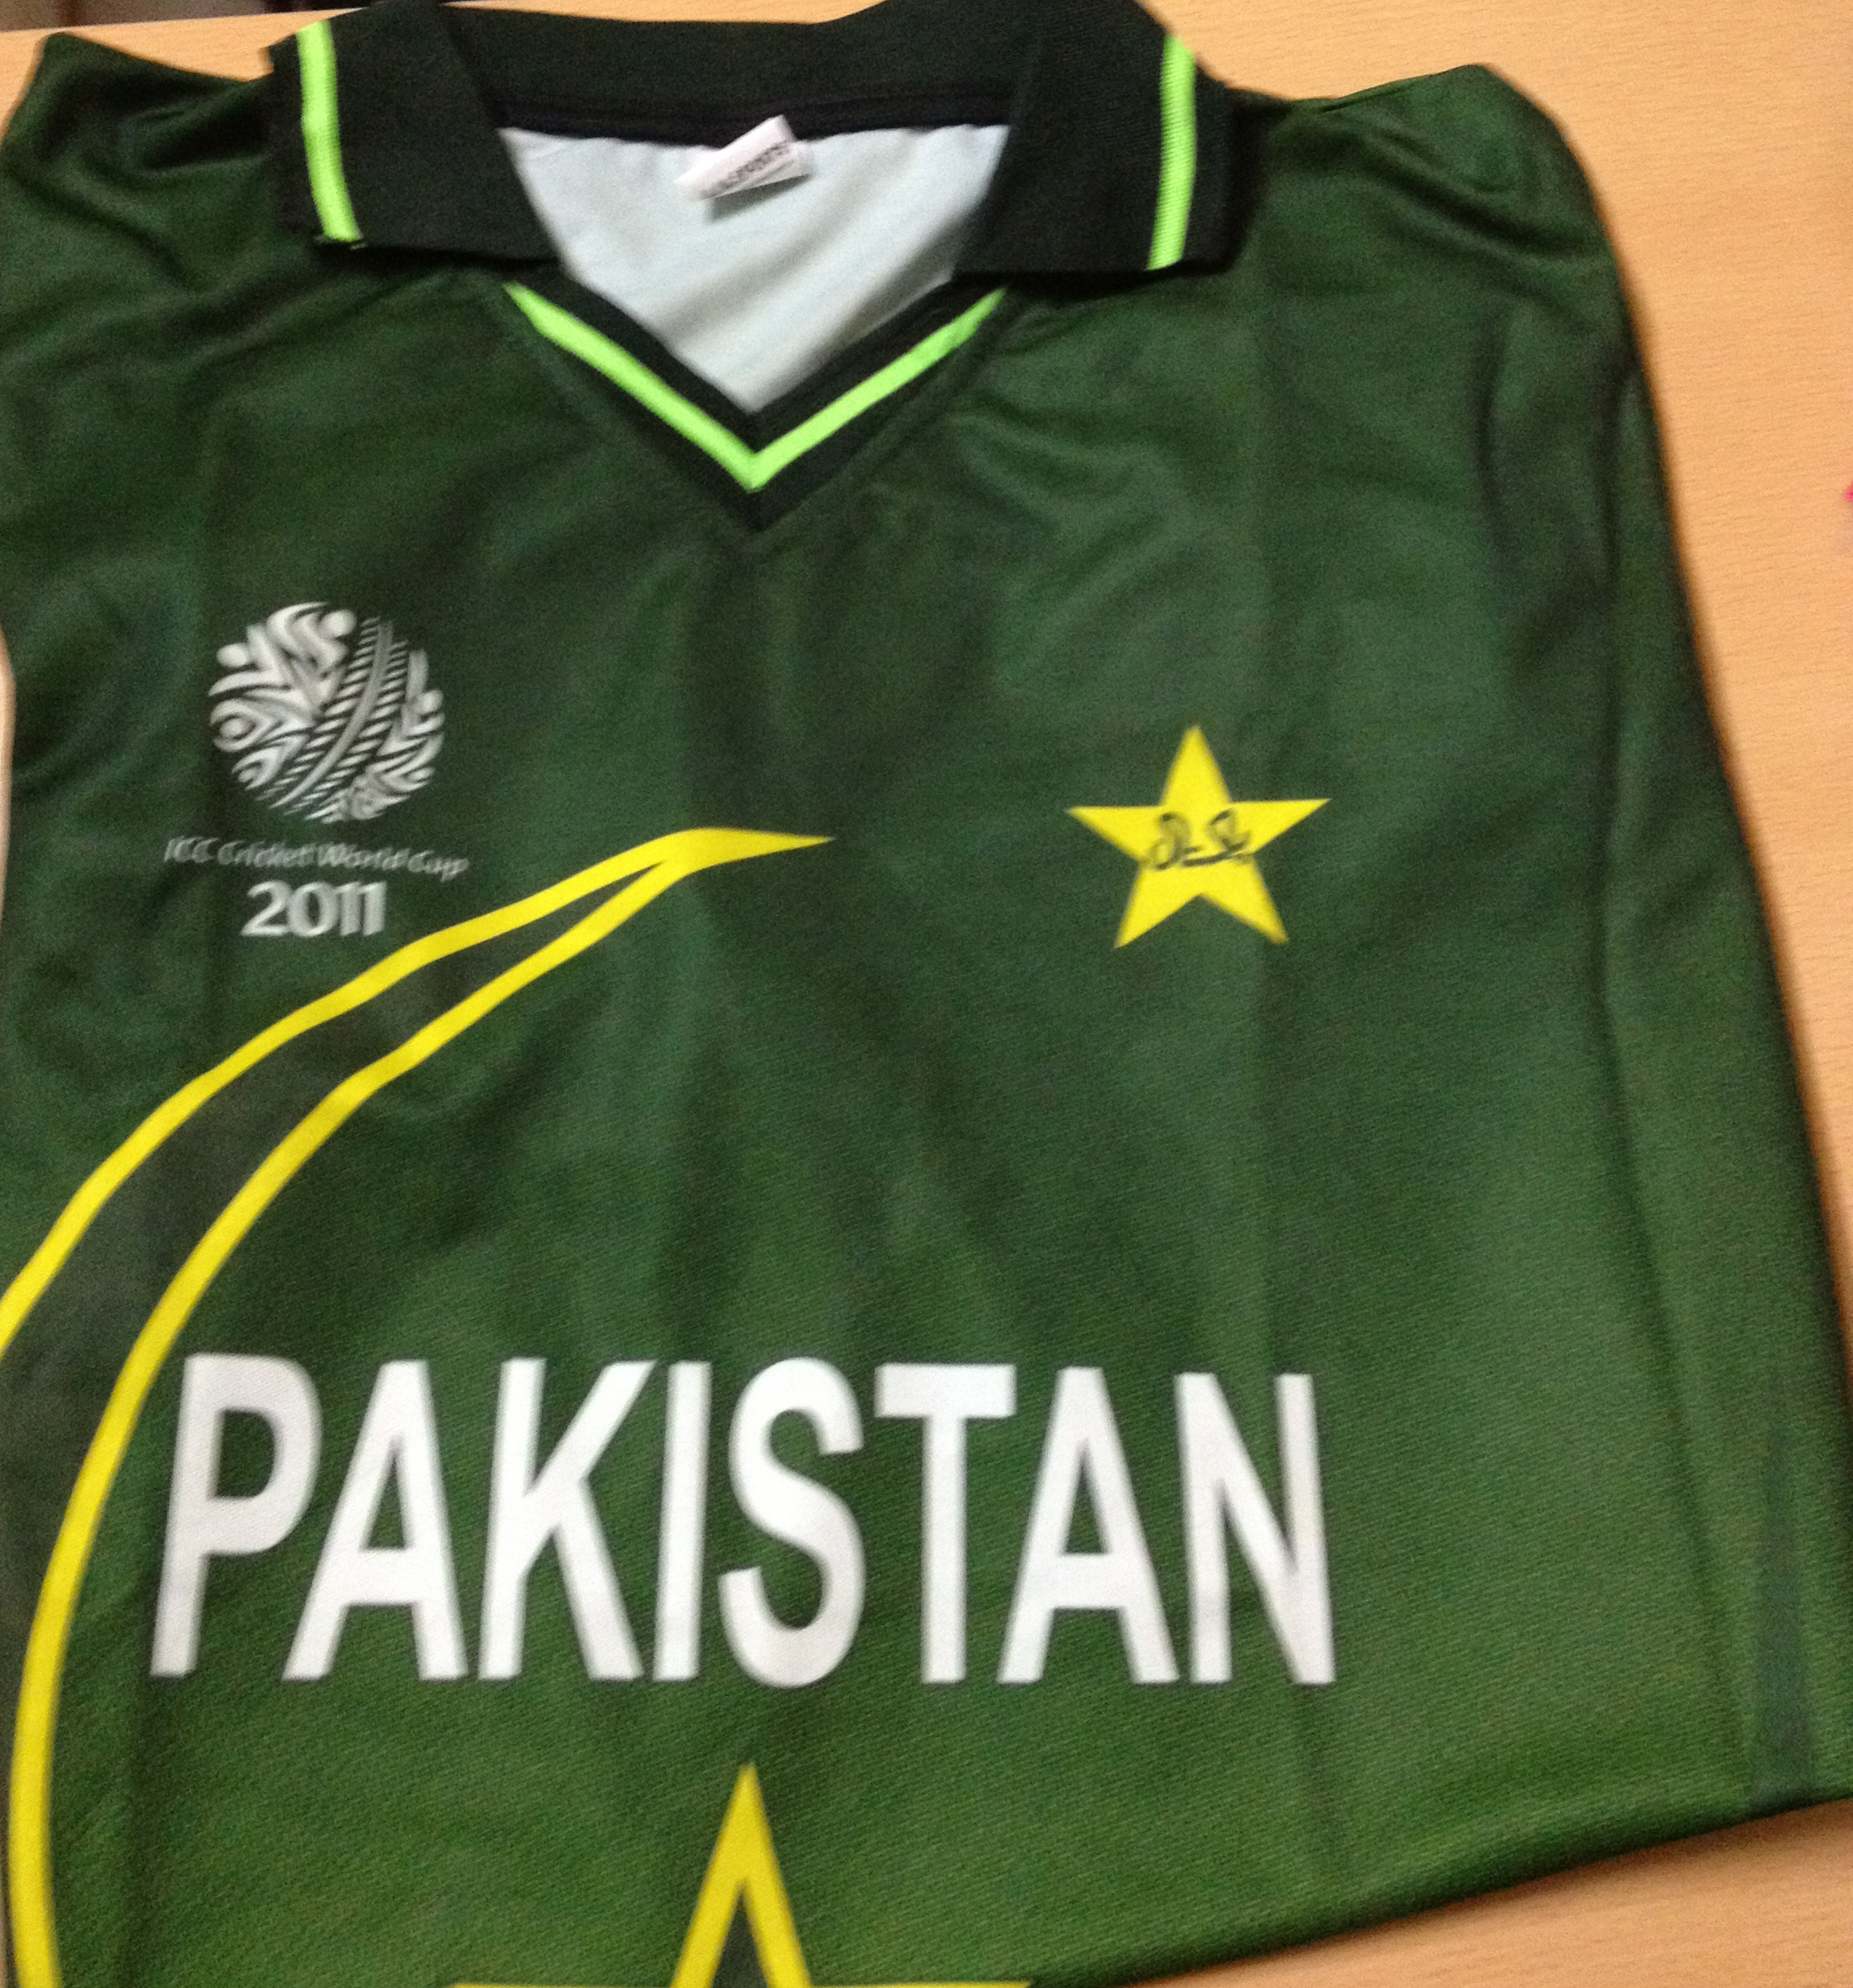 pakistani cricket shirt